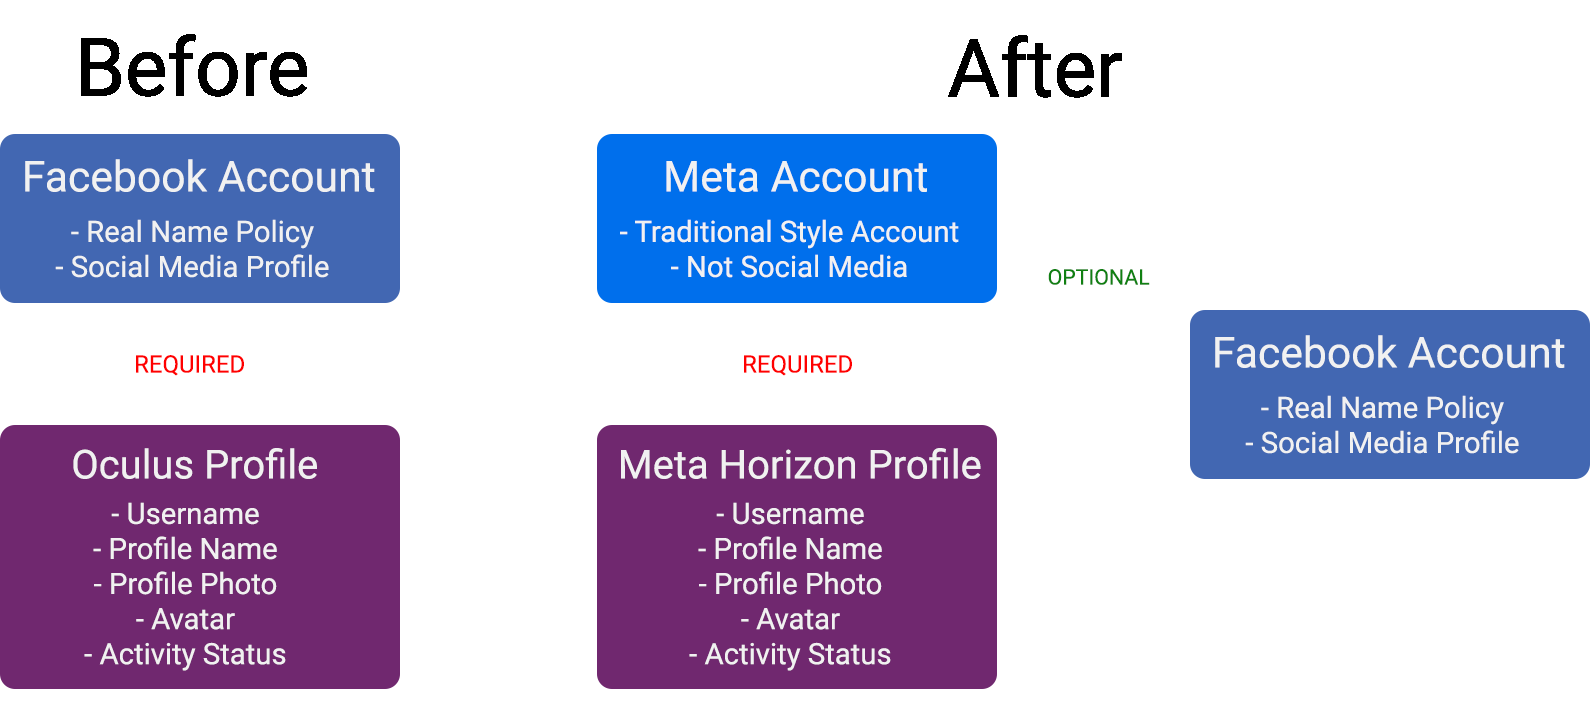 Log in using a Facebook / Meta Account